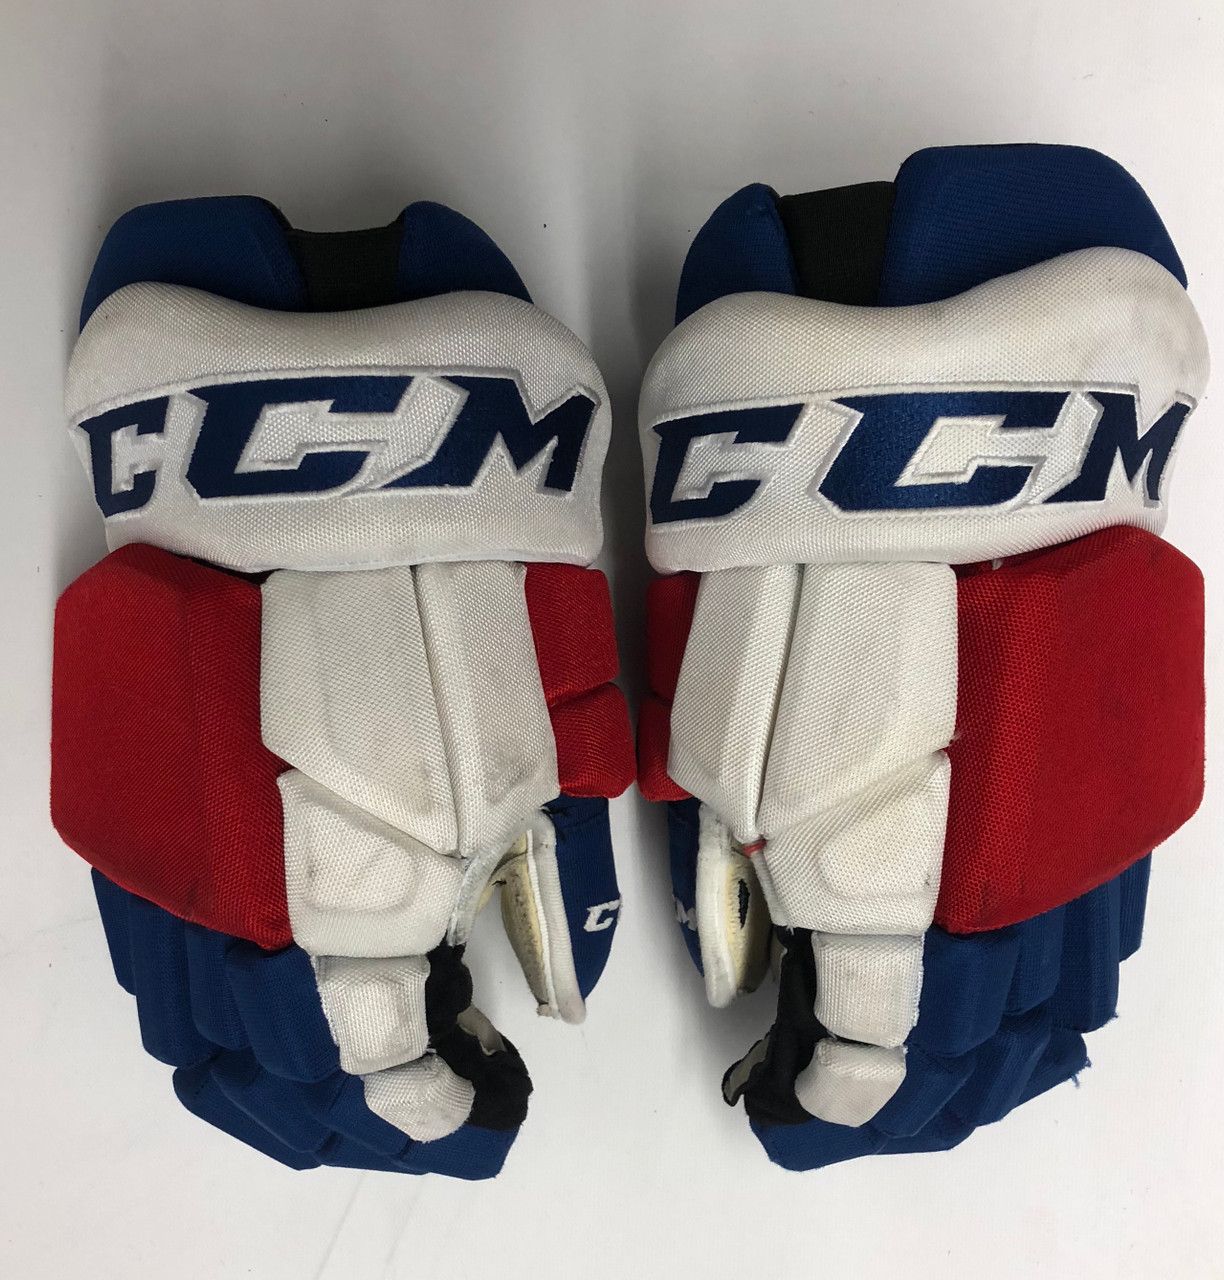 Easton Pro Stock Gloves New York Rangers